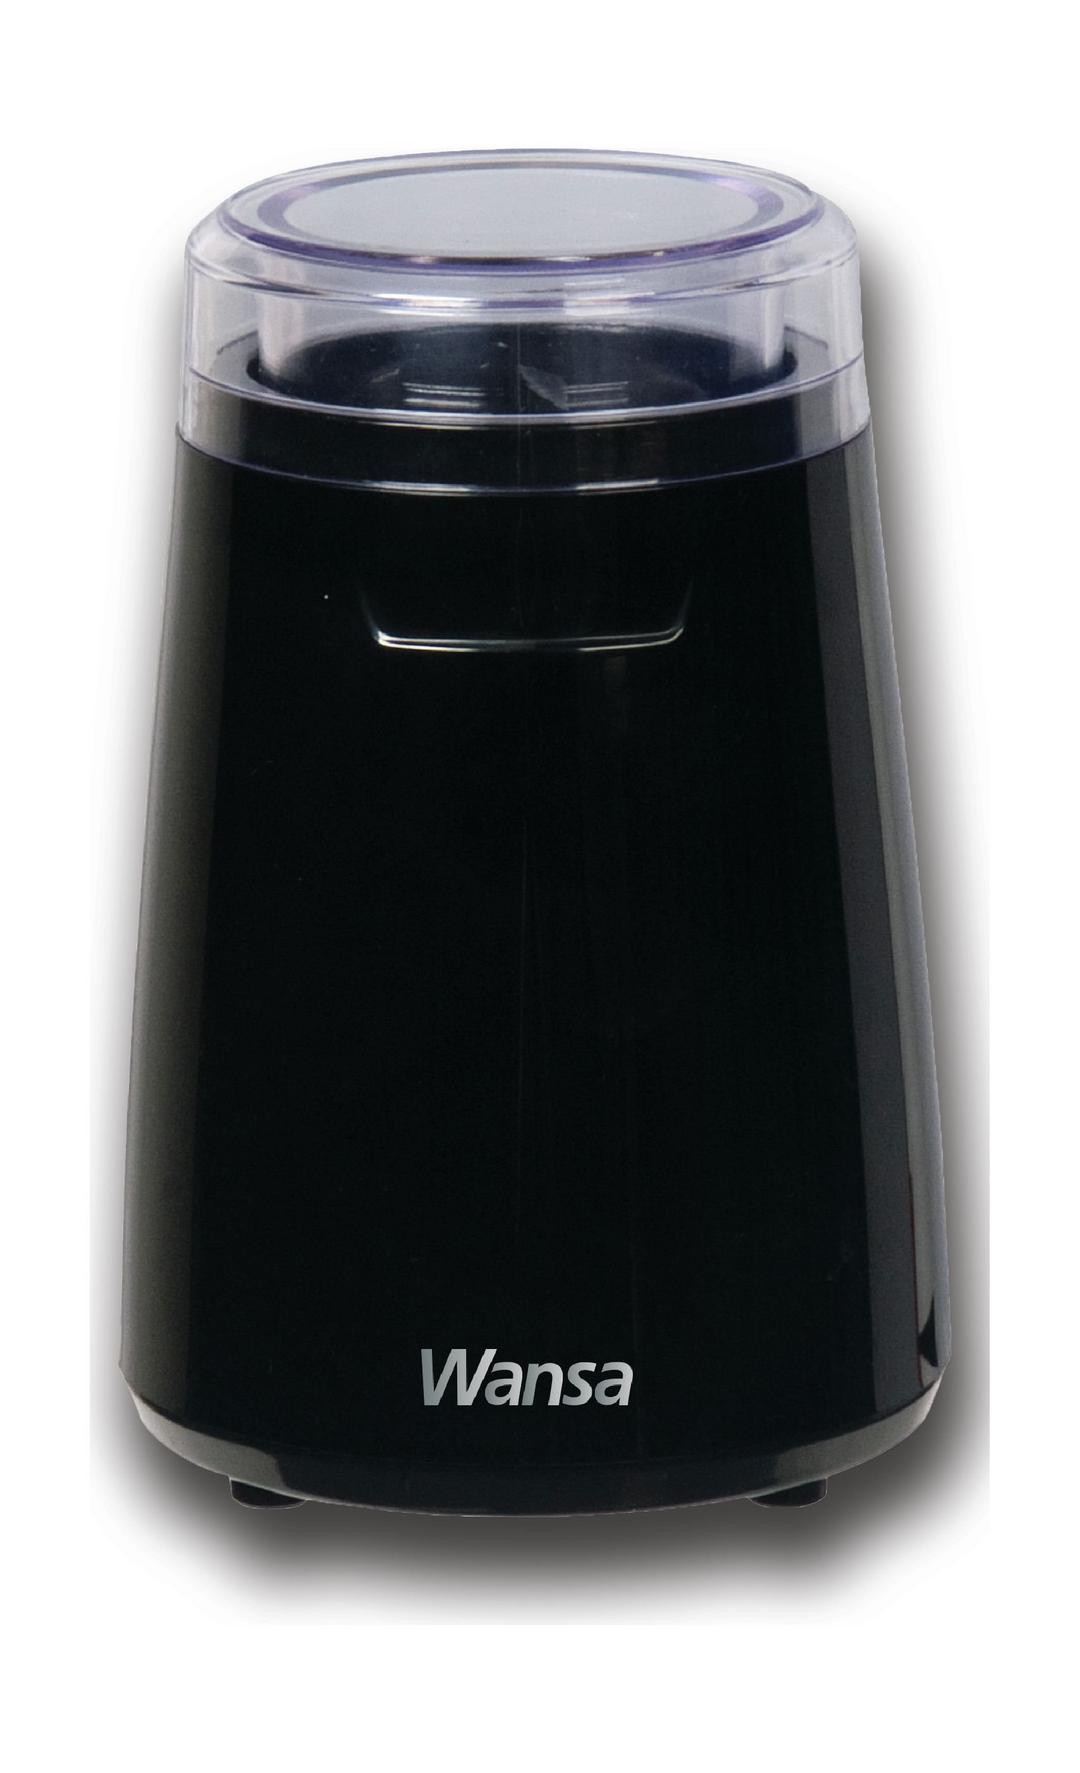 مطحنة القهوة اليدوية بقوة ١٣٥ واط من ونسا - أسود (CG9101)